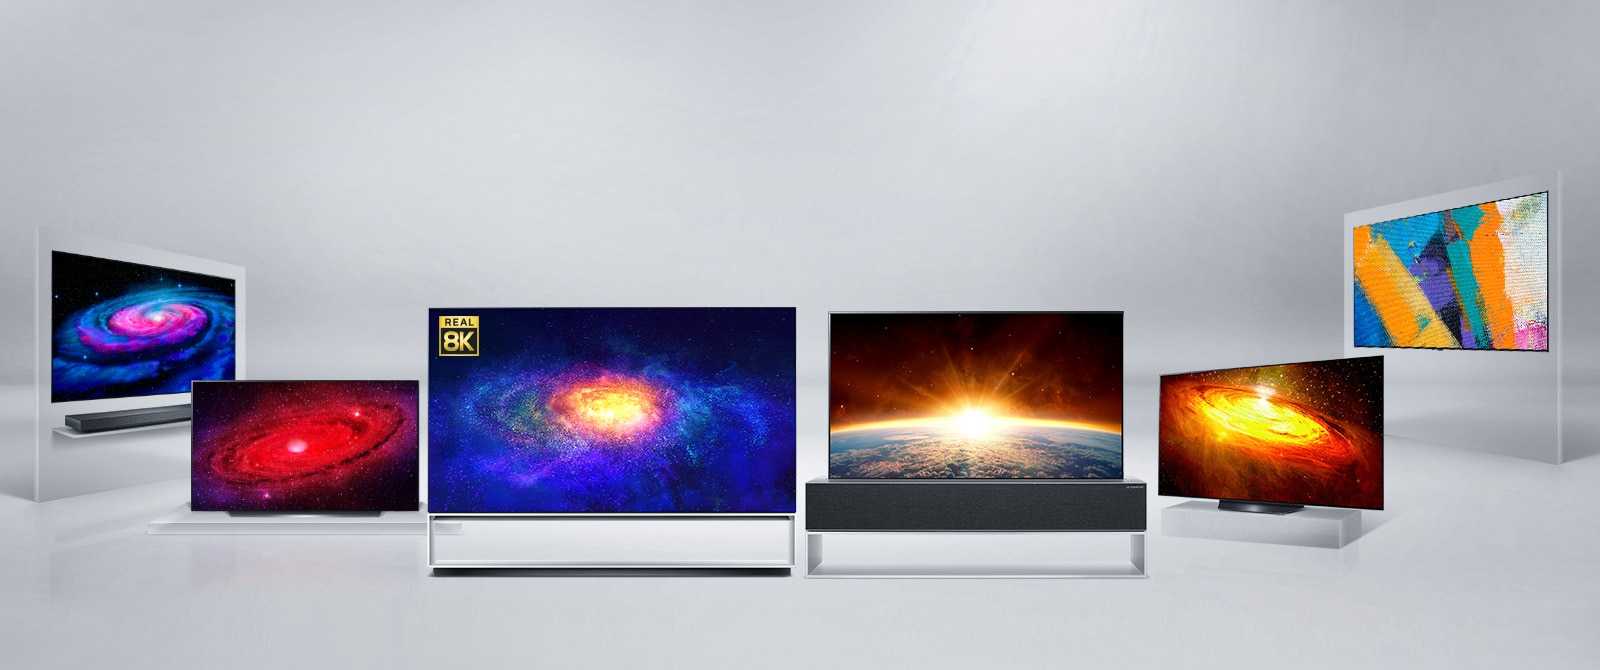 Известная компания LG Electronics порадовала свою целевую аудиторию новым монитором выпущенным под названием 32UN650-W Модель получила качественный IPS-экран с